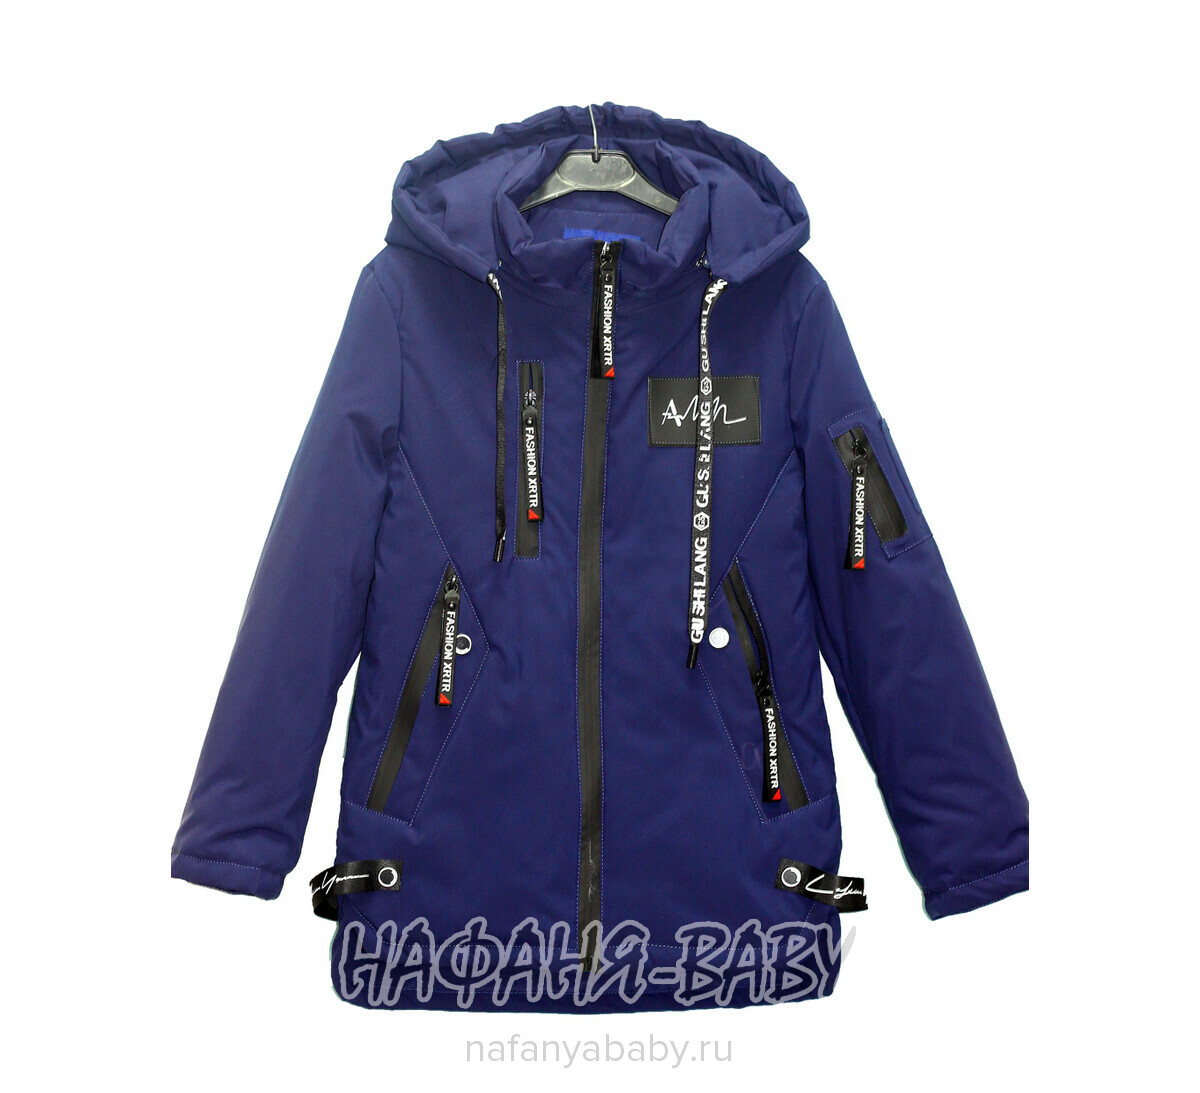 Подростковая удлиненная демисезонная куртка XRTR арт: 620, 10-15 лет, 5-9 лет, оптом Китай (Пекин)